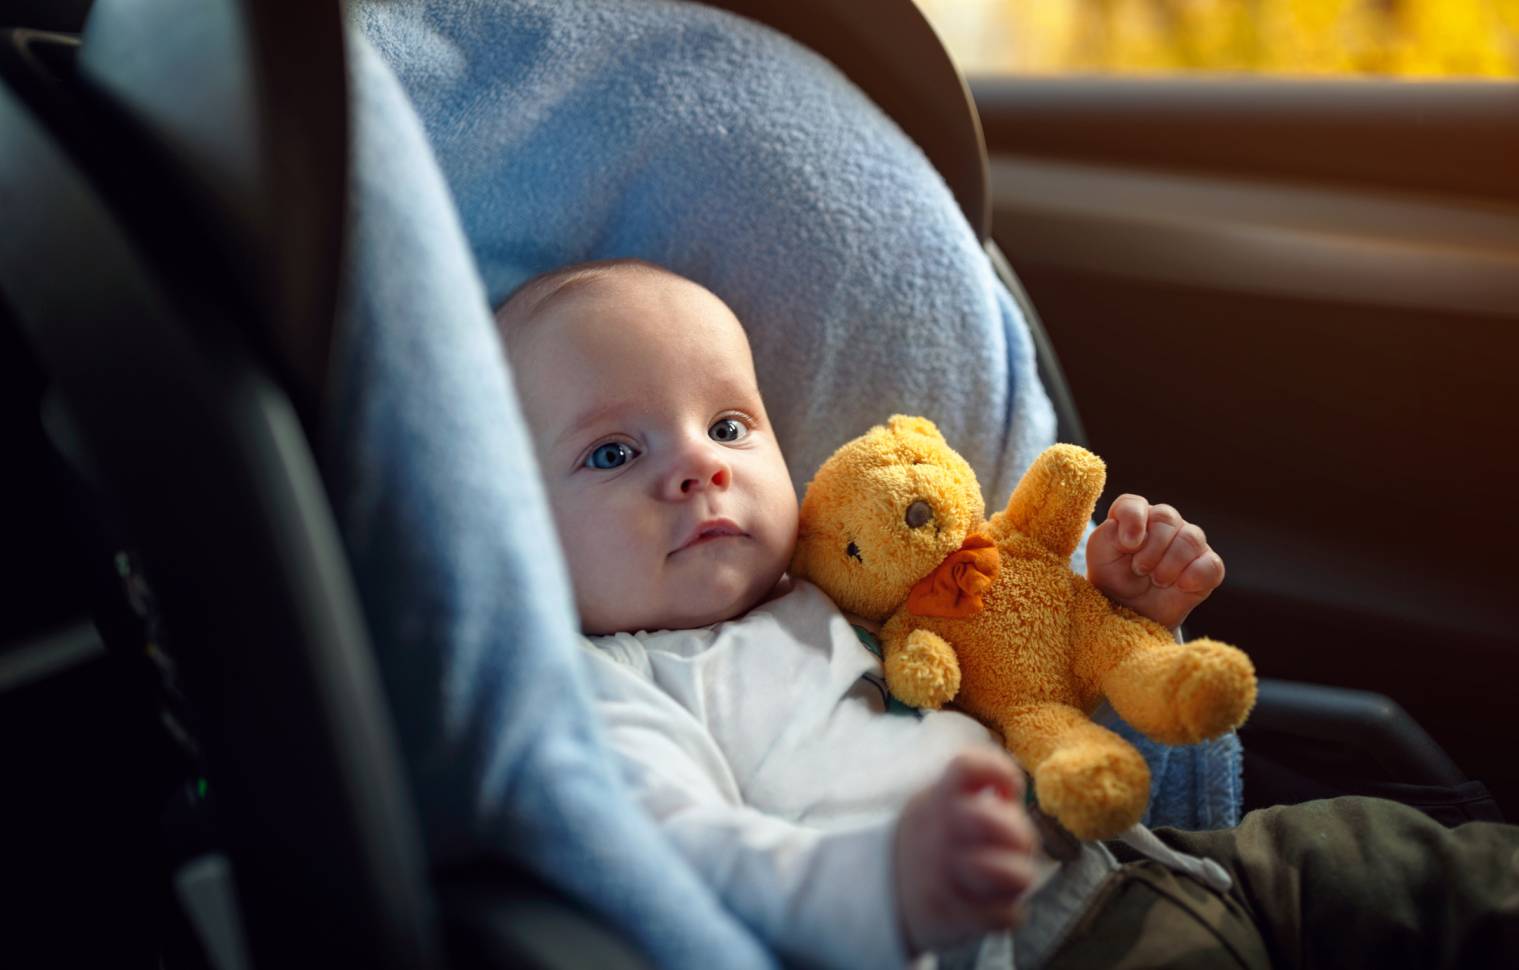 Trajets en voiture avec bébé : quels jouets choisir ?